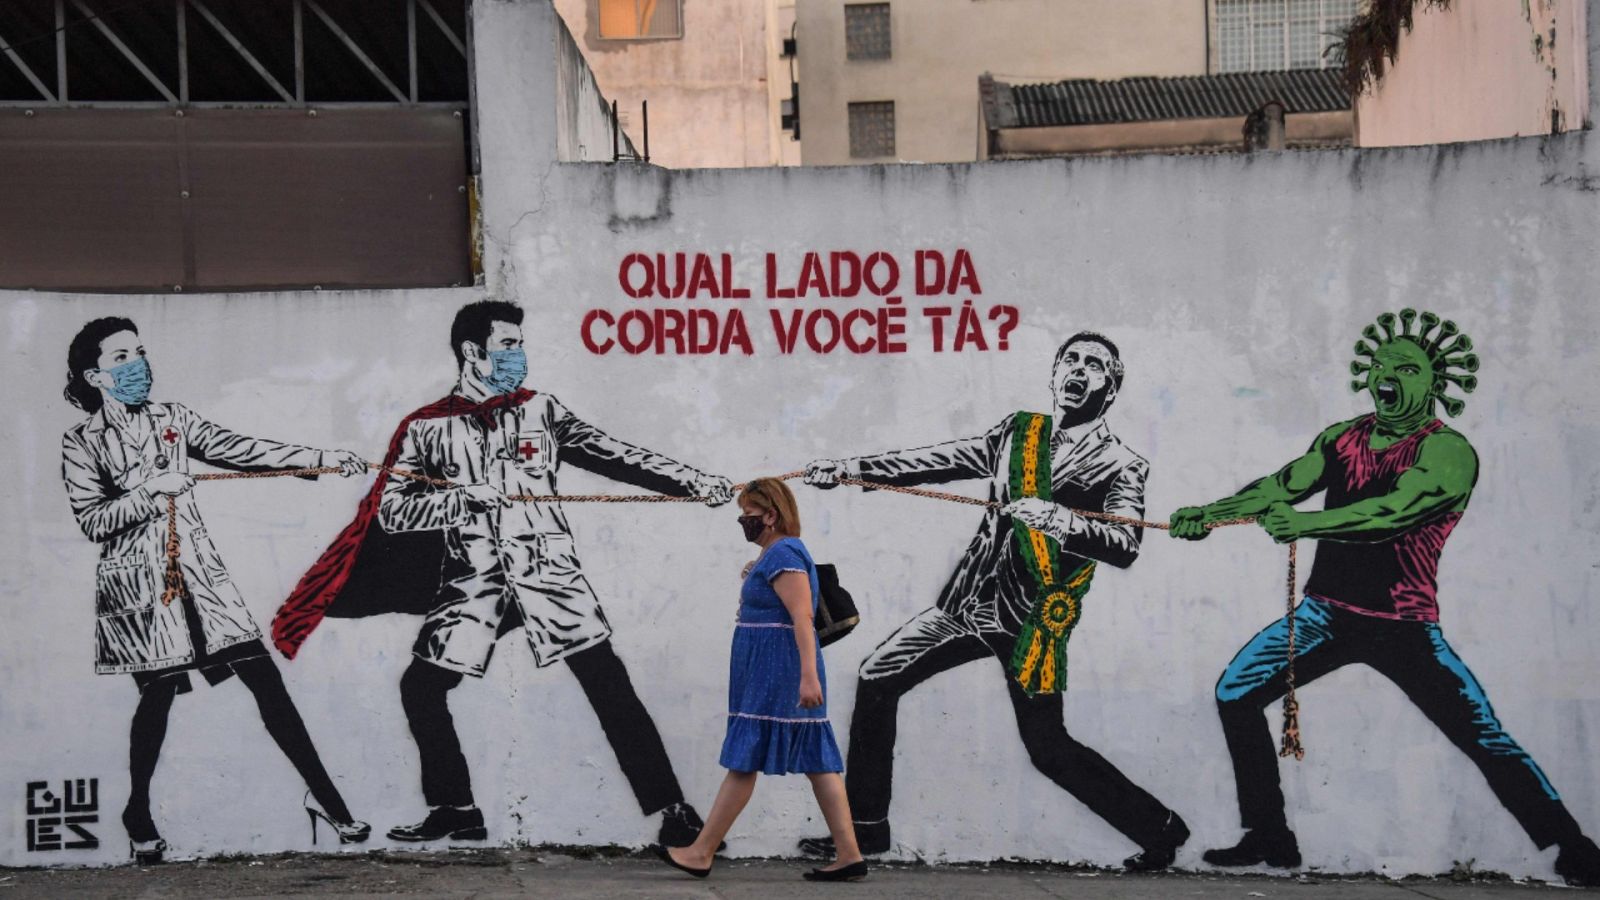 Una mujer pasando frente a un mural sobre la COVID-19 en una calle de Sao Paulo, Brasil.